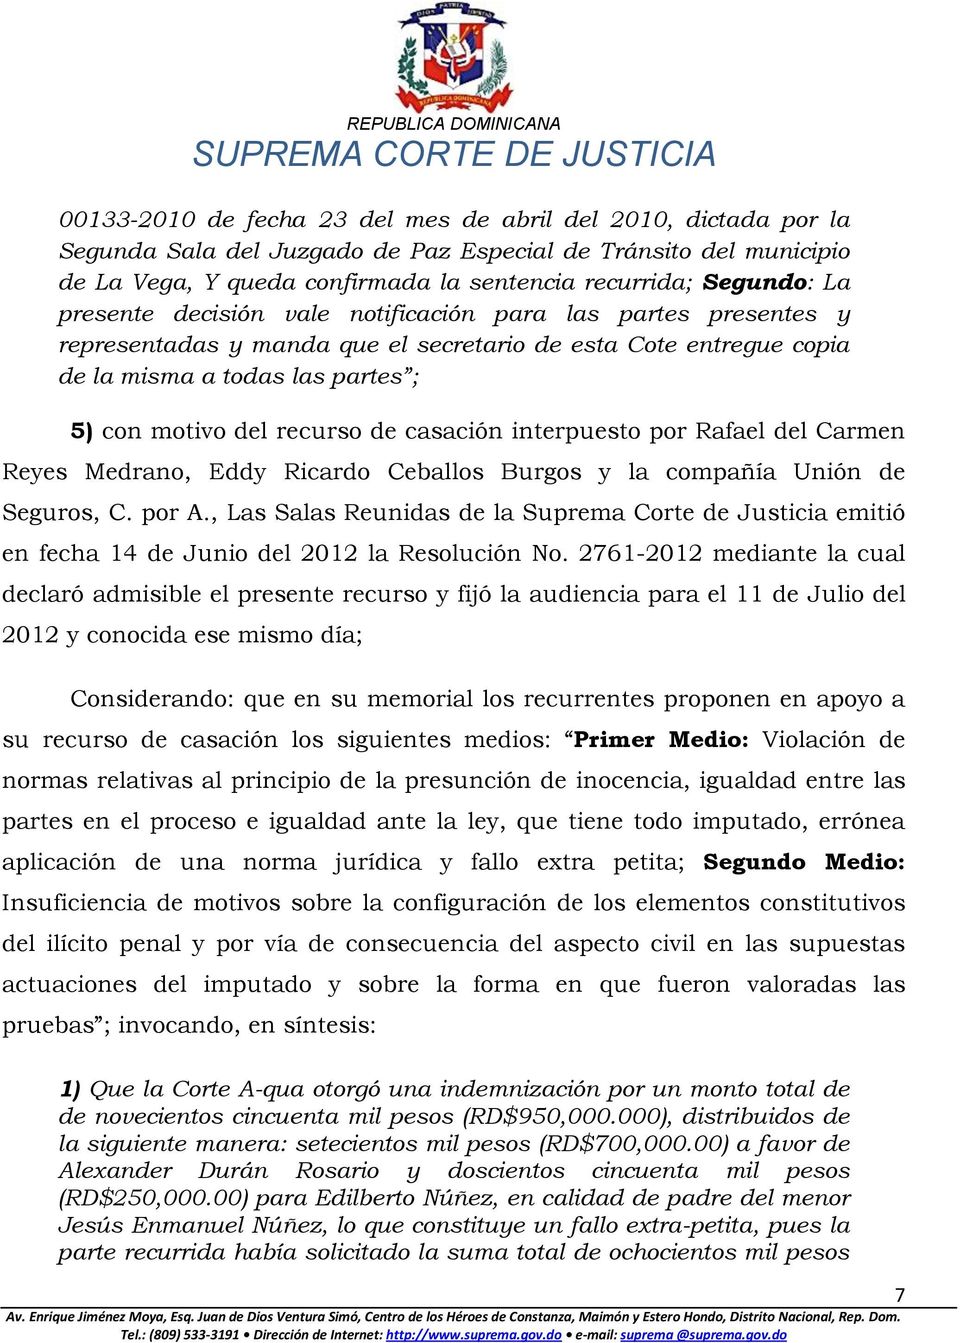 casación interpuesto por Rafael del Carmen Reyes Medrano, Eddy Ricardo Ceballos Burgos y la compañía Unión de Seguros, C. por A.